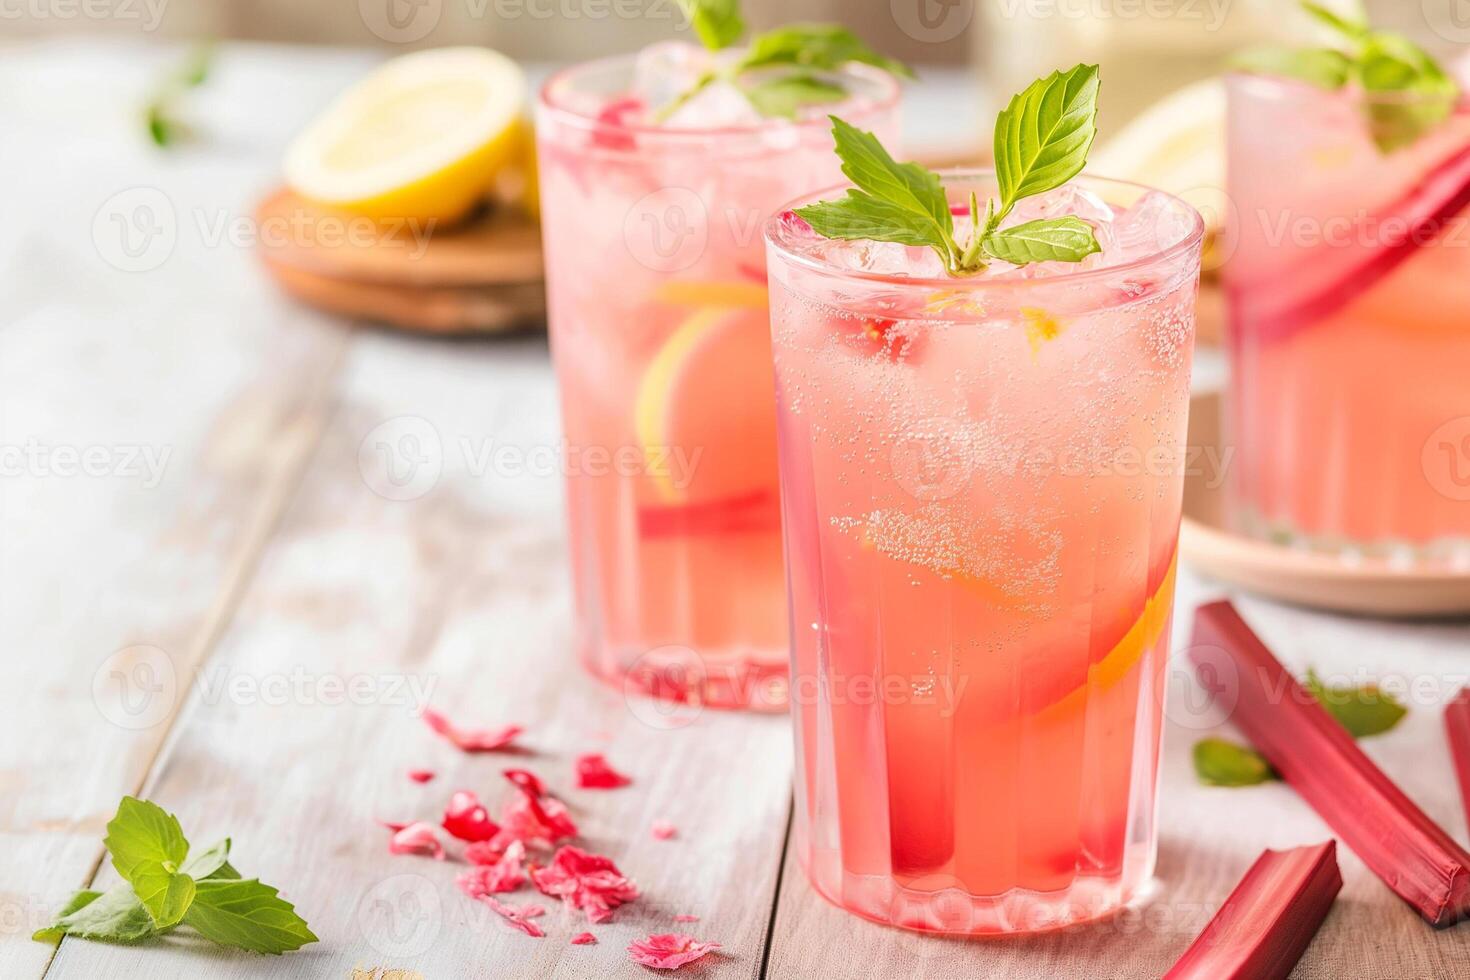 verfrissend roze rabarber limonade in bril met munt garneren, geschikt voor zomer feesten, picknicks, of moeders dag brunch foto